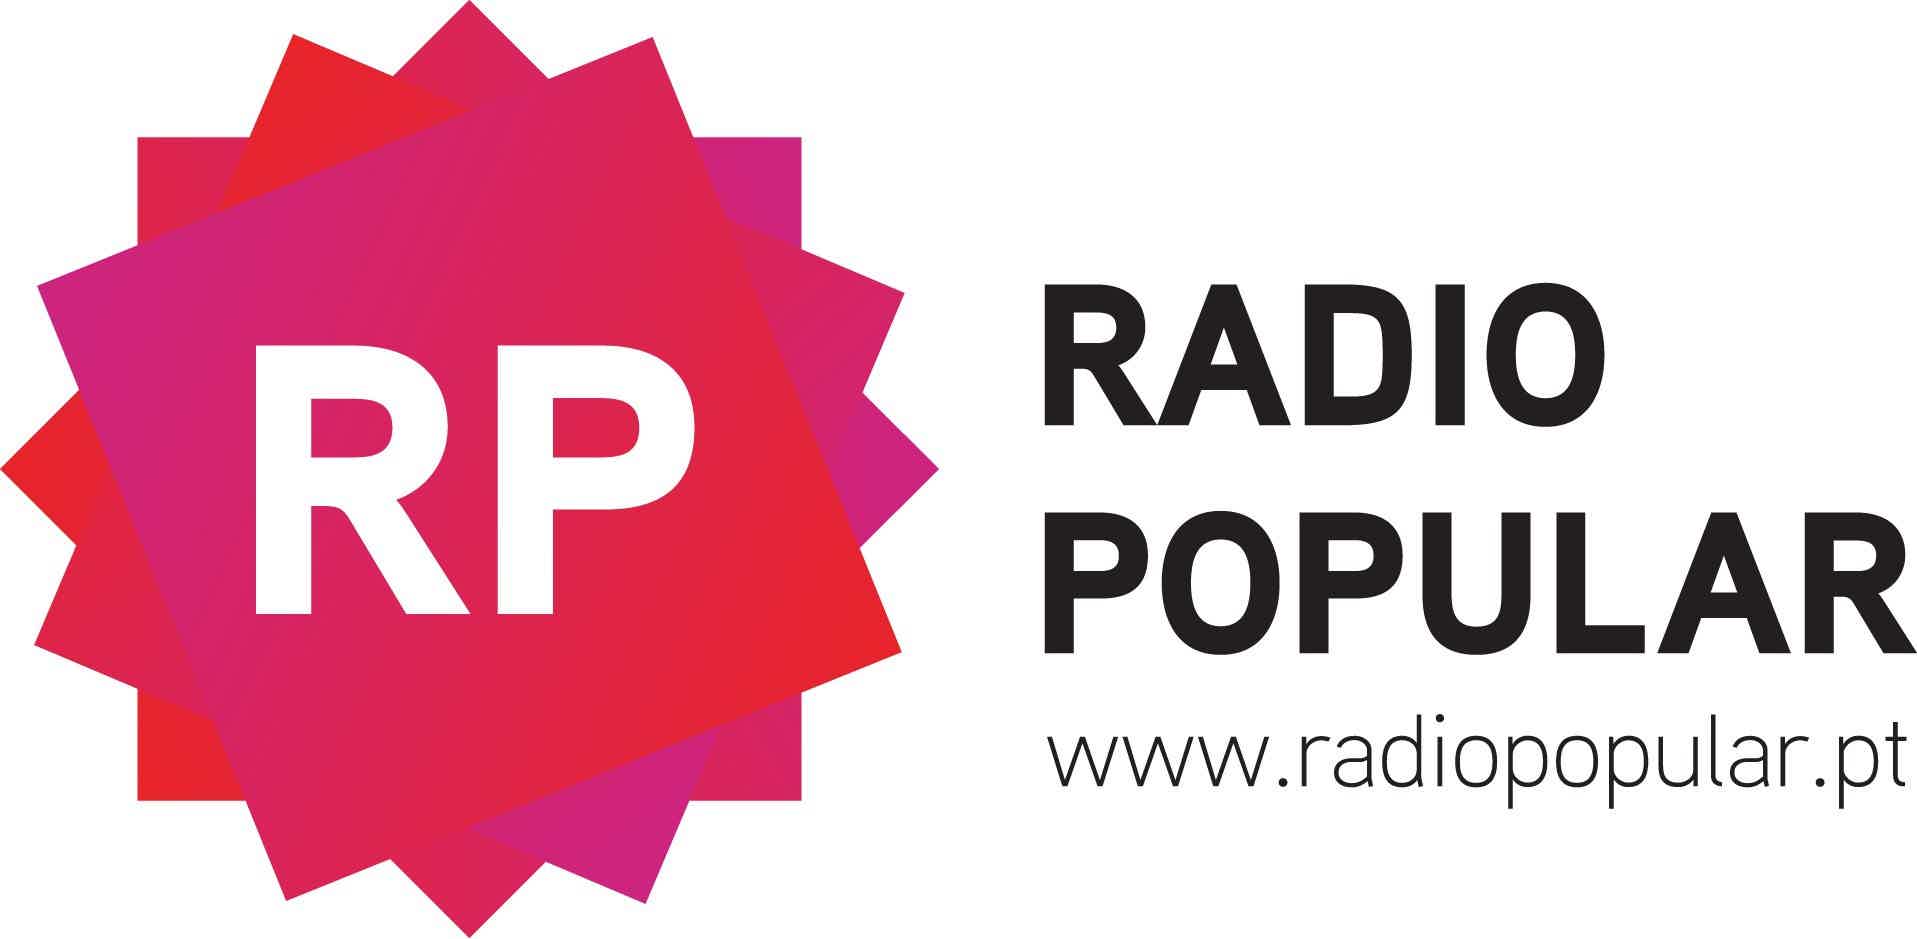 Mas, afinal, o que é o cartão Radio Popular? Fonte: Radio.